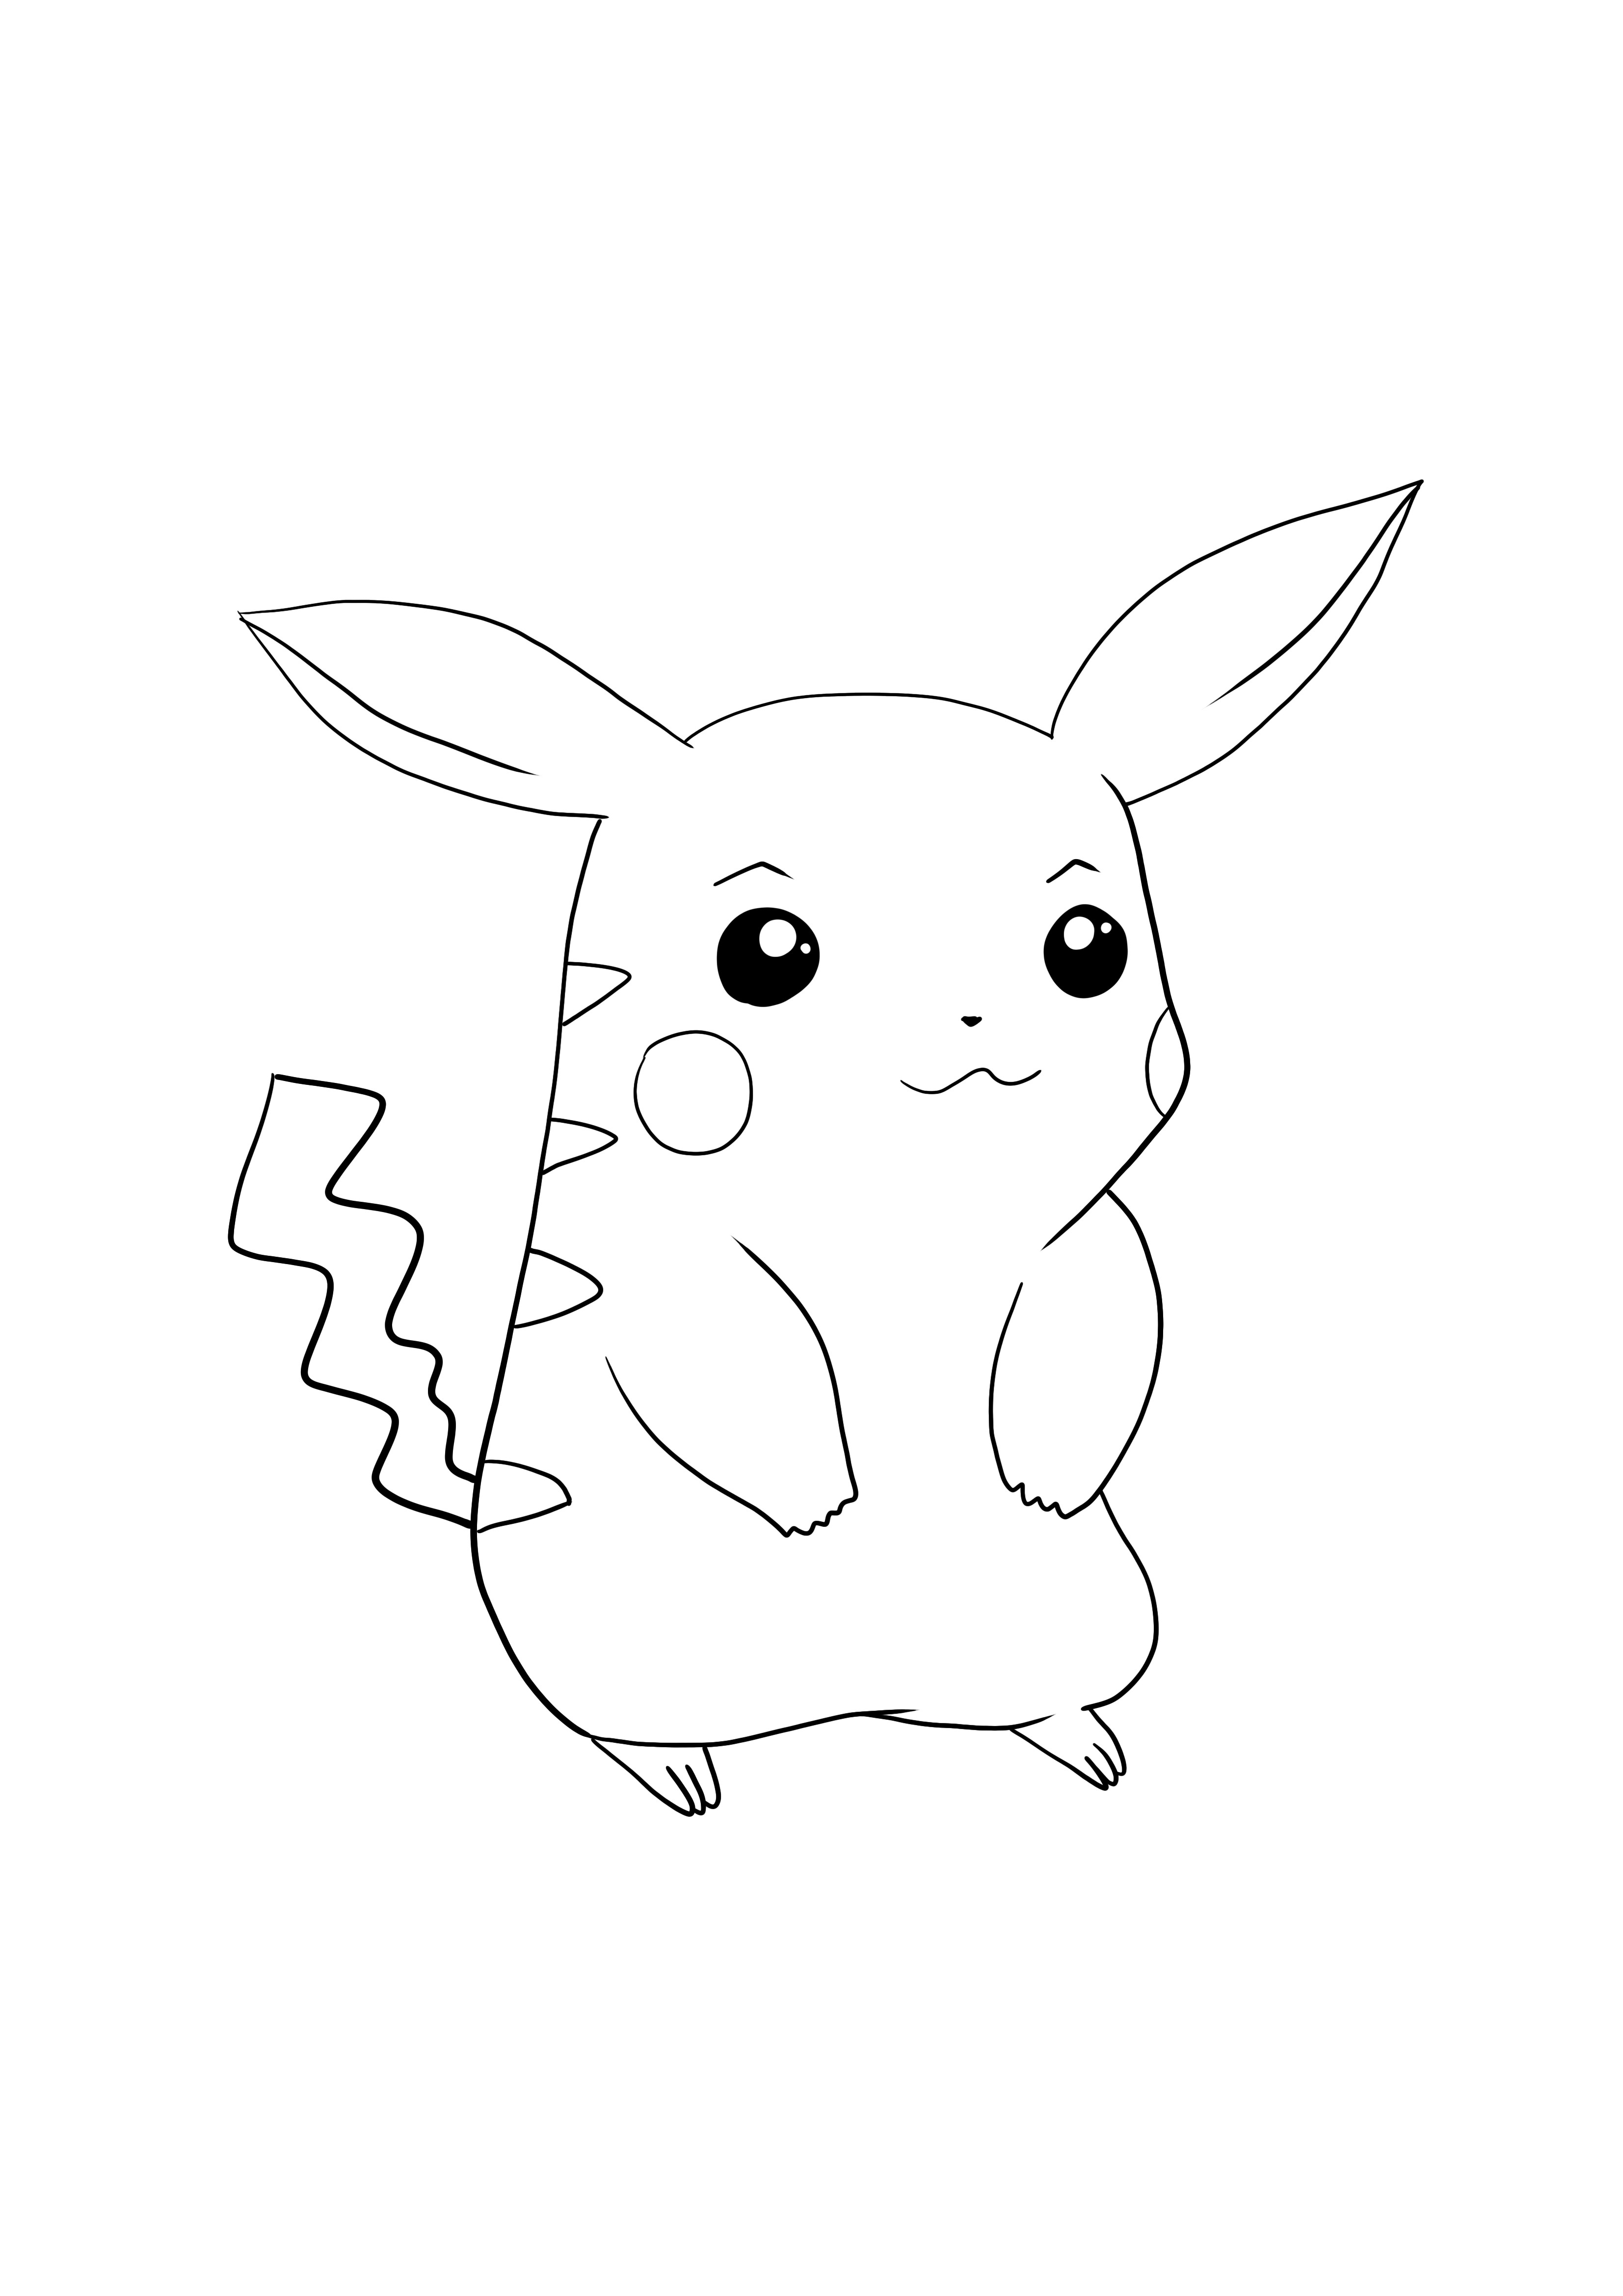 Pikachu-Pokémon vai a scaricare e colorare la pagina gratuita